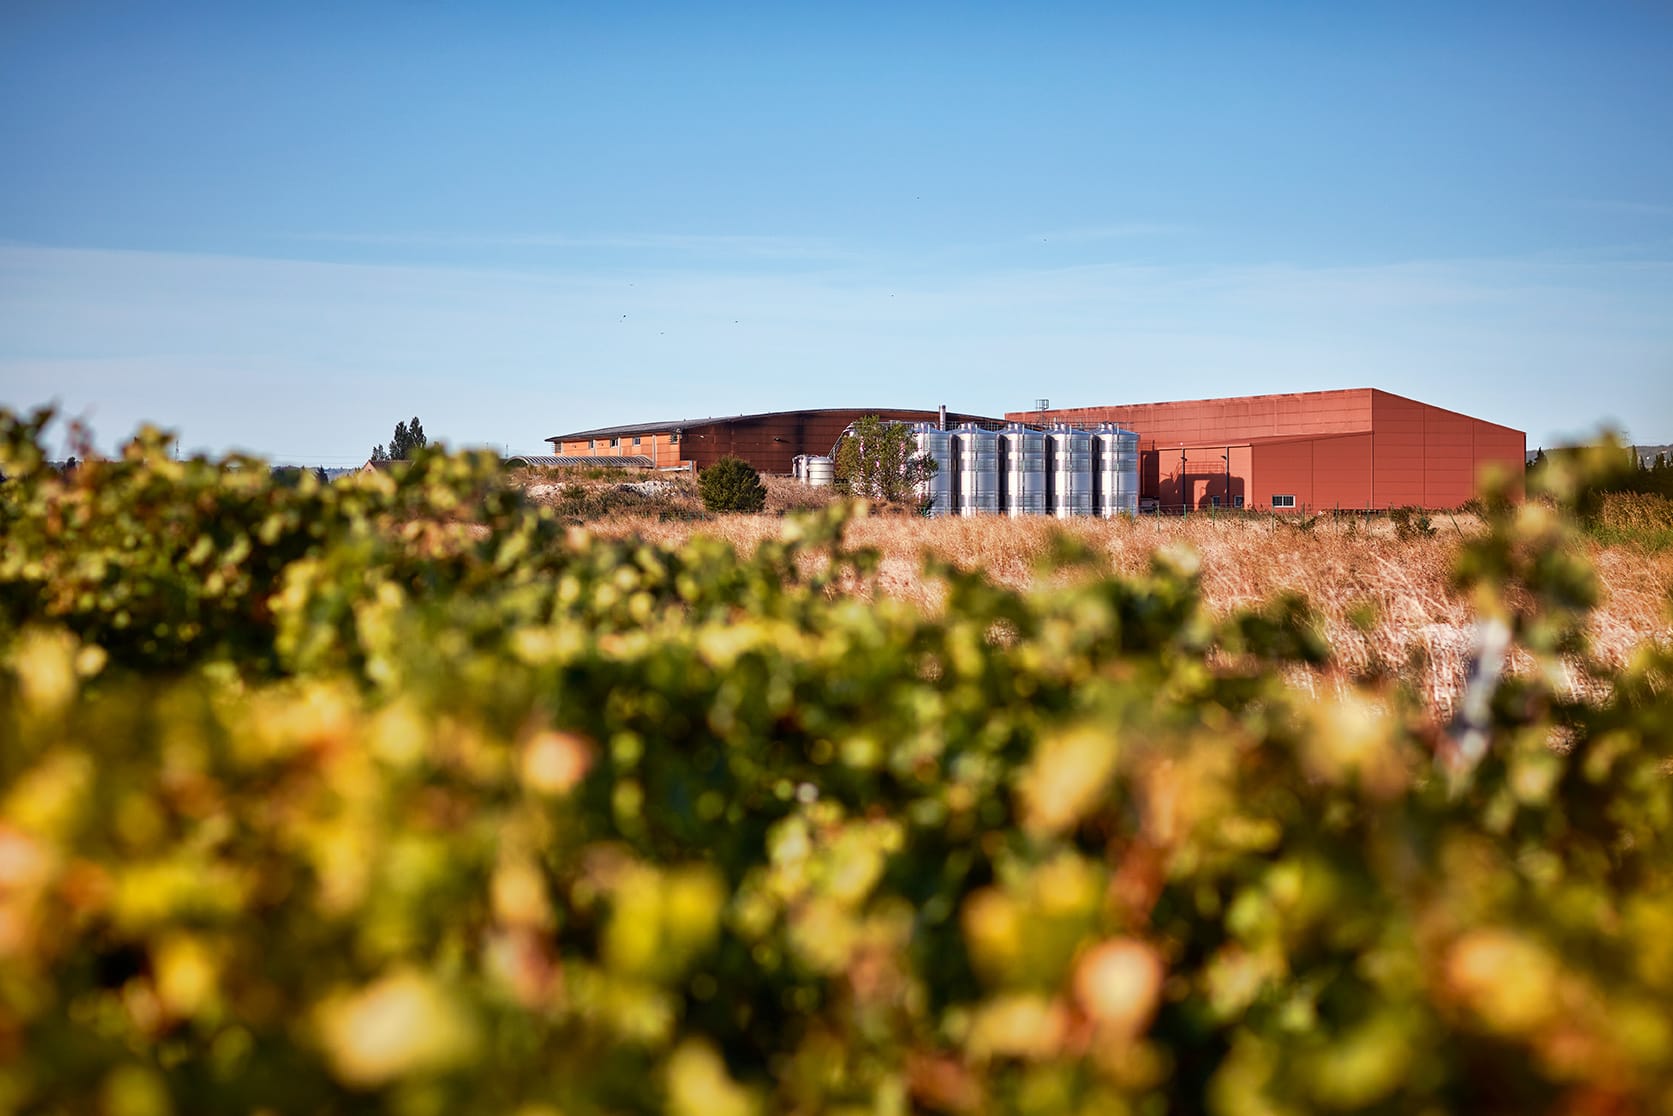 — 2013 Cellier des Chartreux augmente sa surface de production / stockage de 1200 m2.